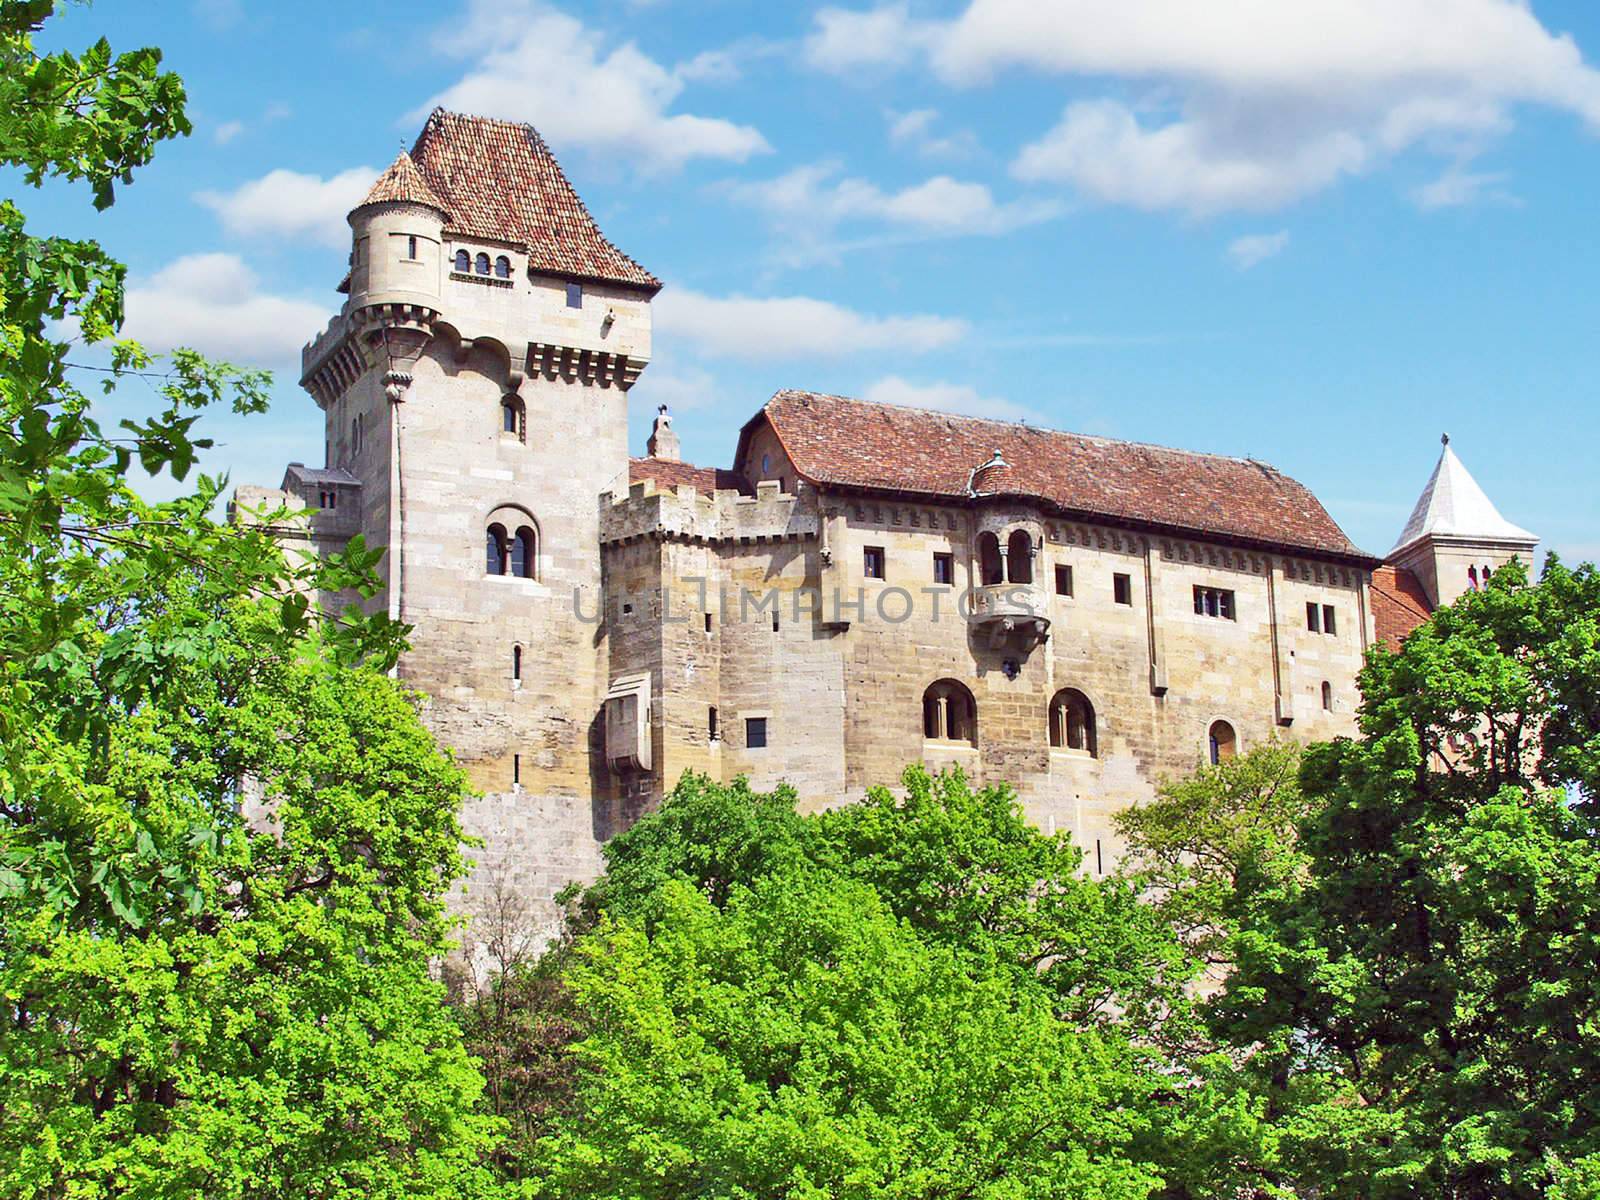 Castle Liechtenstein in Avstrii.Vensky forest. Vienna. Summer